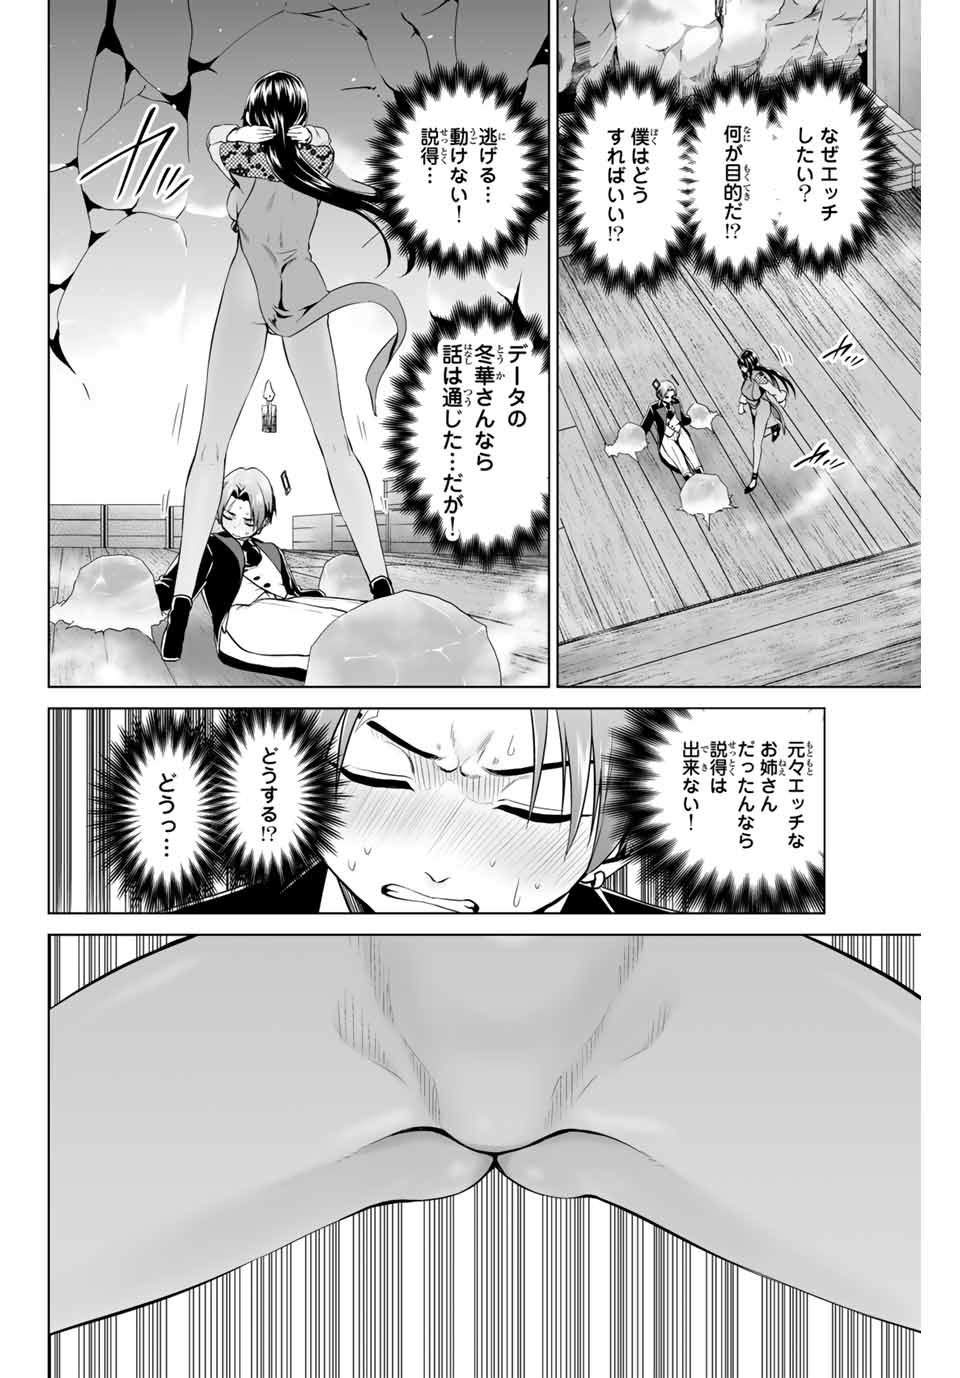 Gunshin No Takuto - Chapter 18 - Page 6